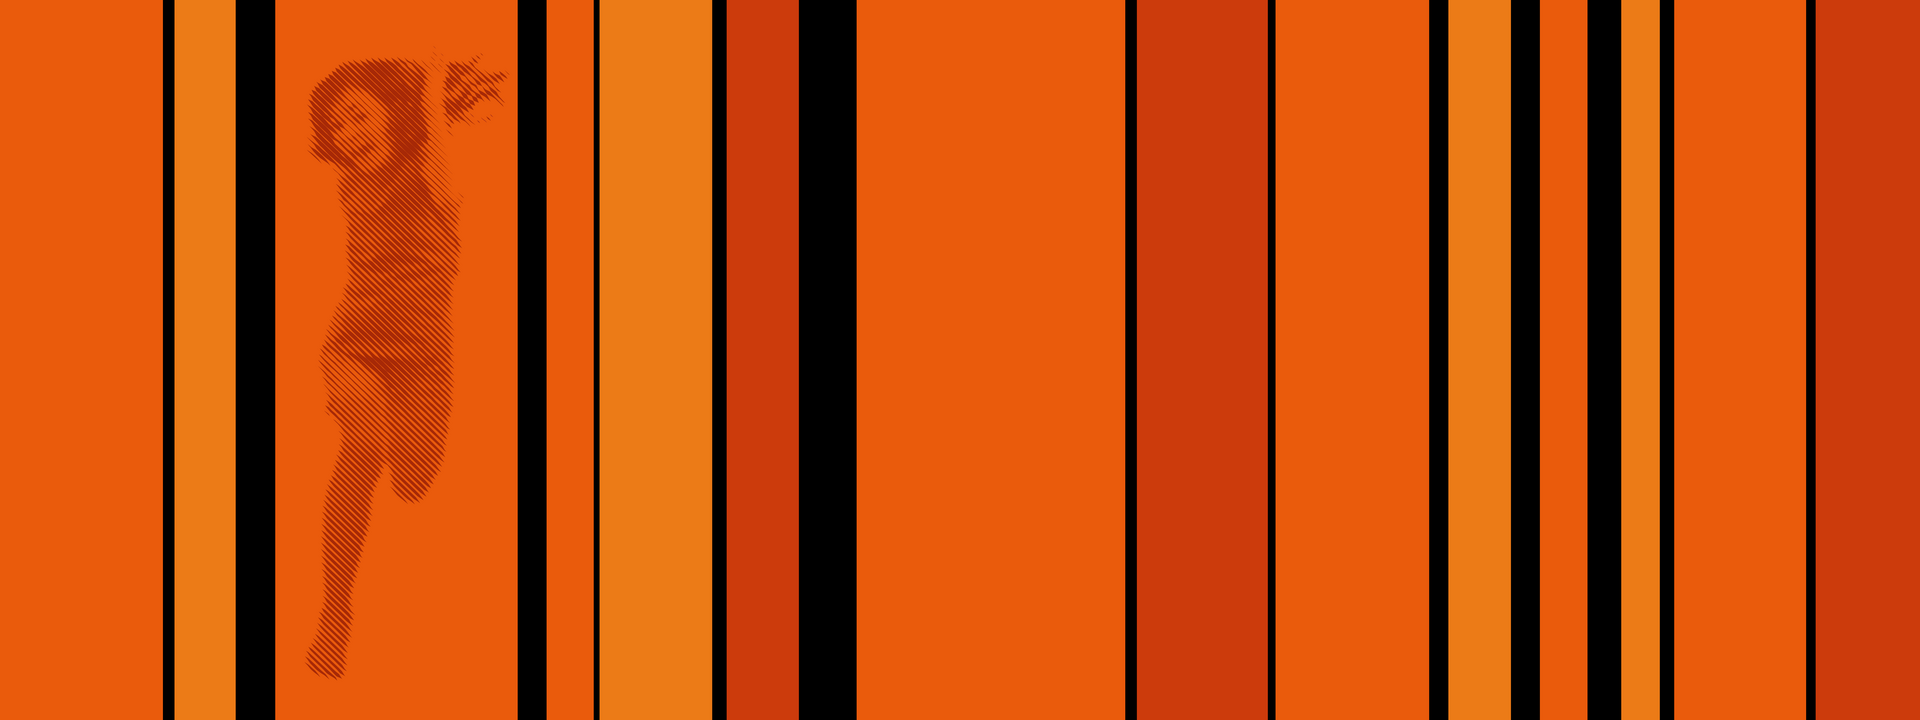 Vertikale Streifen in verschiedenen Orangetönen. Unterbrochen von unterschiedlich breiten schwarzen Linien. In einem der linken Streifen ist ein einfarbiges, gerastertes Bild eines springenden Mädchens zu sehen.